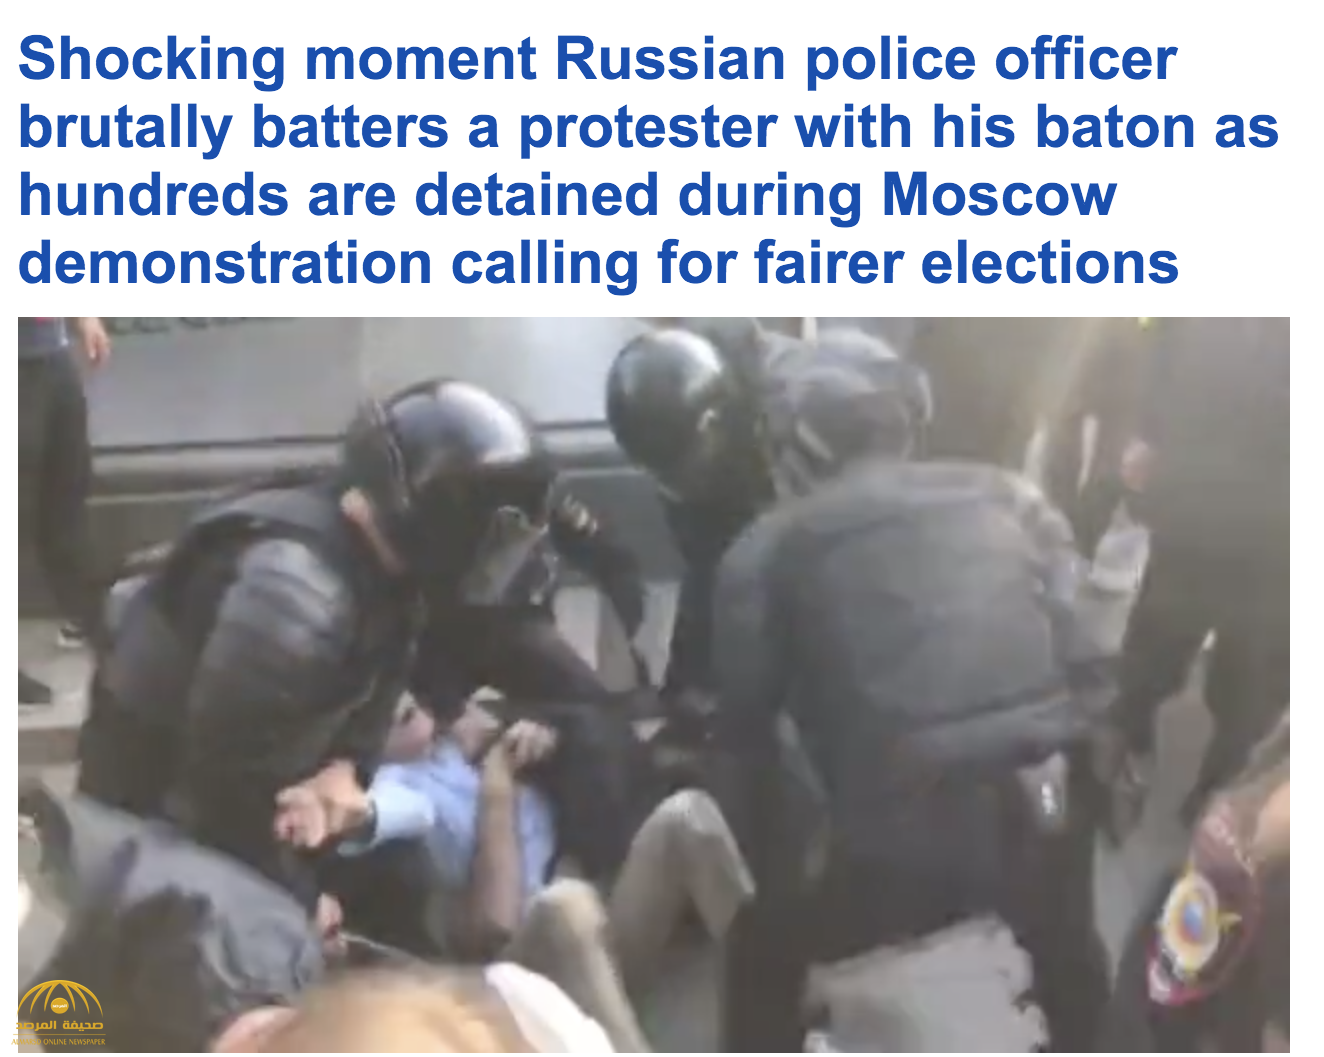 شاهد فيديو صادم : تعذيب ضابط  روسي لمتظاهر  طالب بنزاهة الانتخابات في موسكو